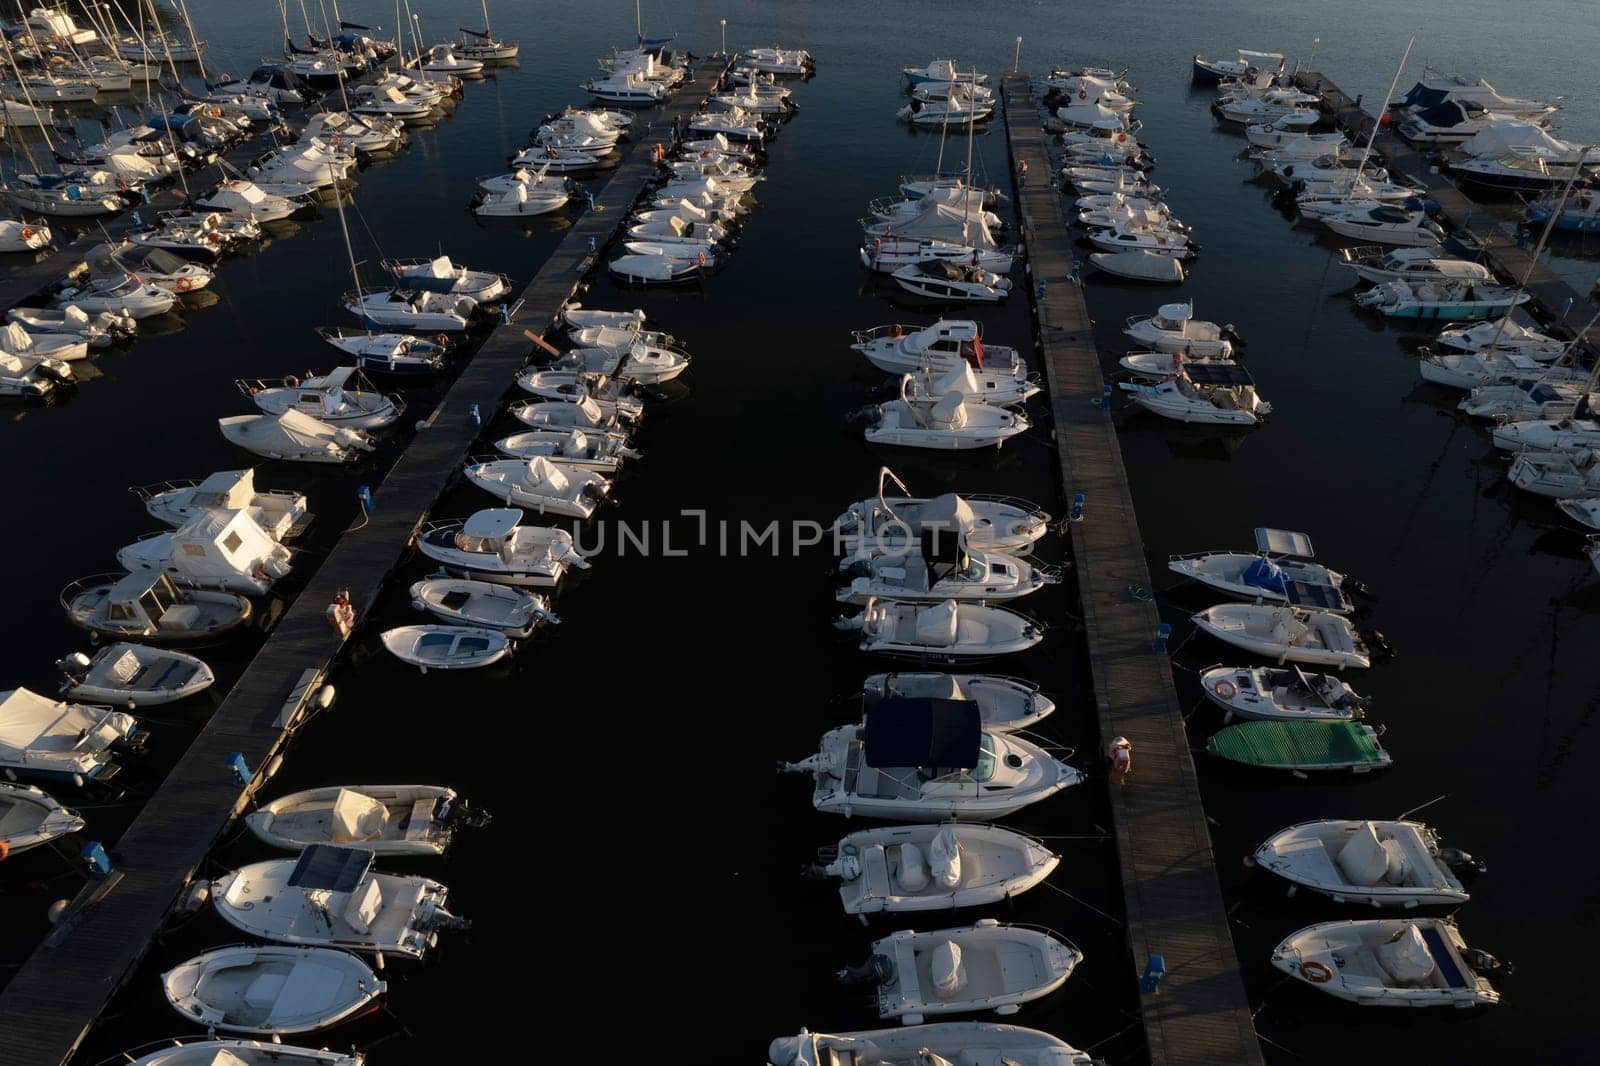 Photographic documentation of the tourist port of Viareggio  by fotografiche.eu